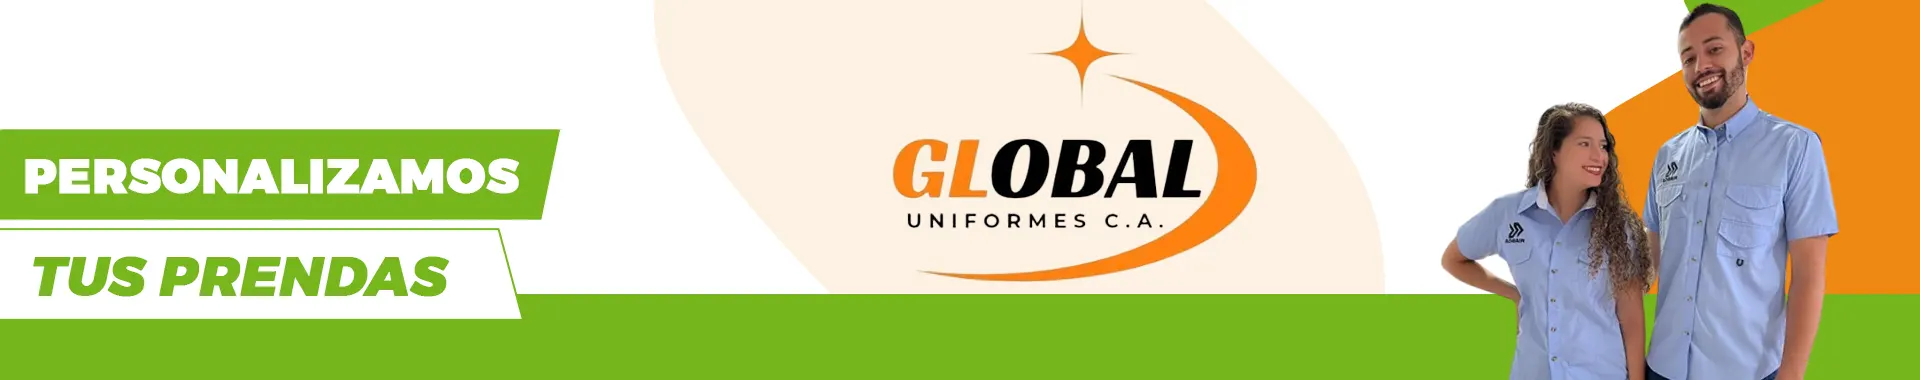 Imagen 2 del perfil de Global Uniformes